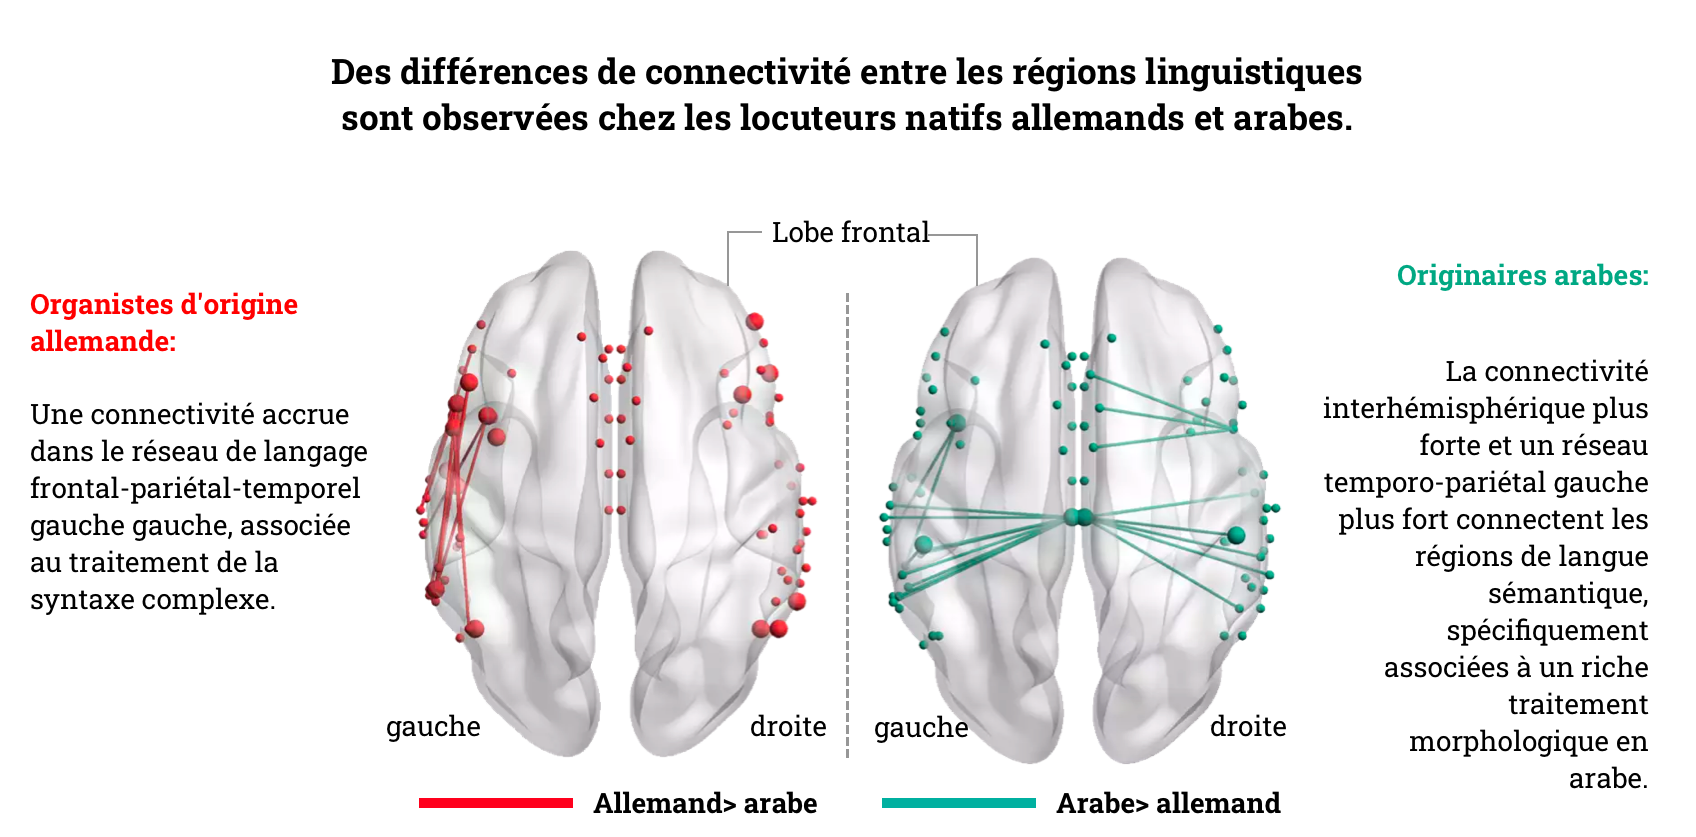 Les cerveaux des germanophones et des arabophones sont mieux câblés, comme le montre une carte